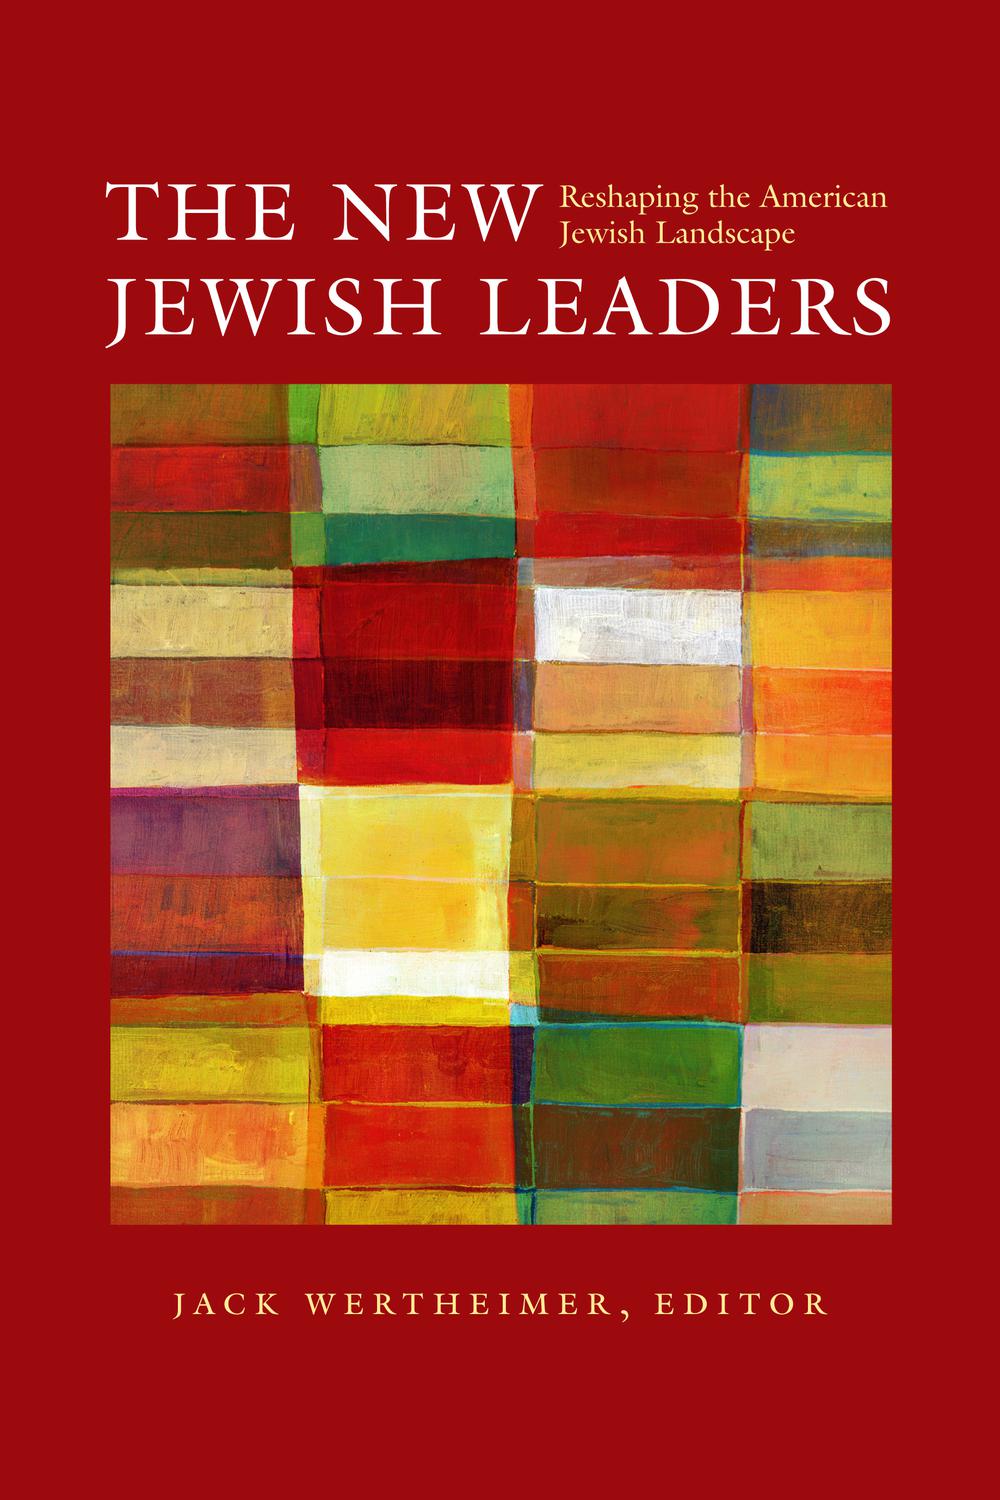 The New Jewish Leaders - Jack Wertheimer